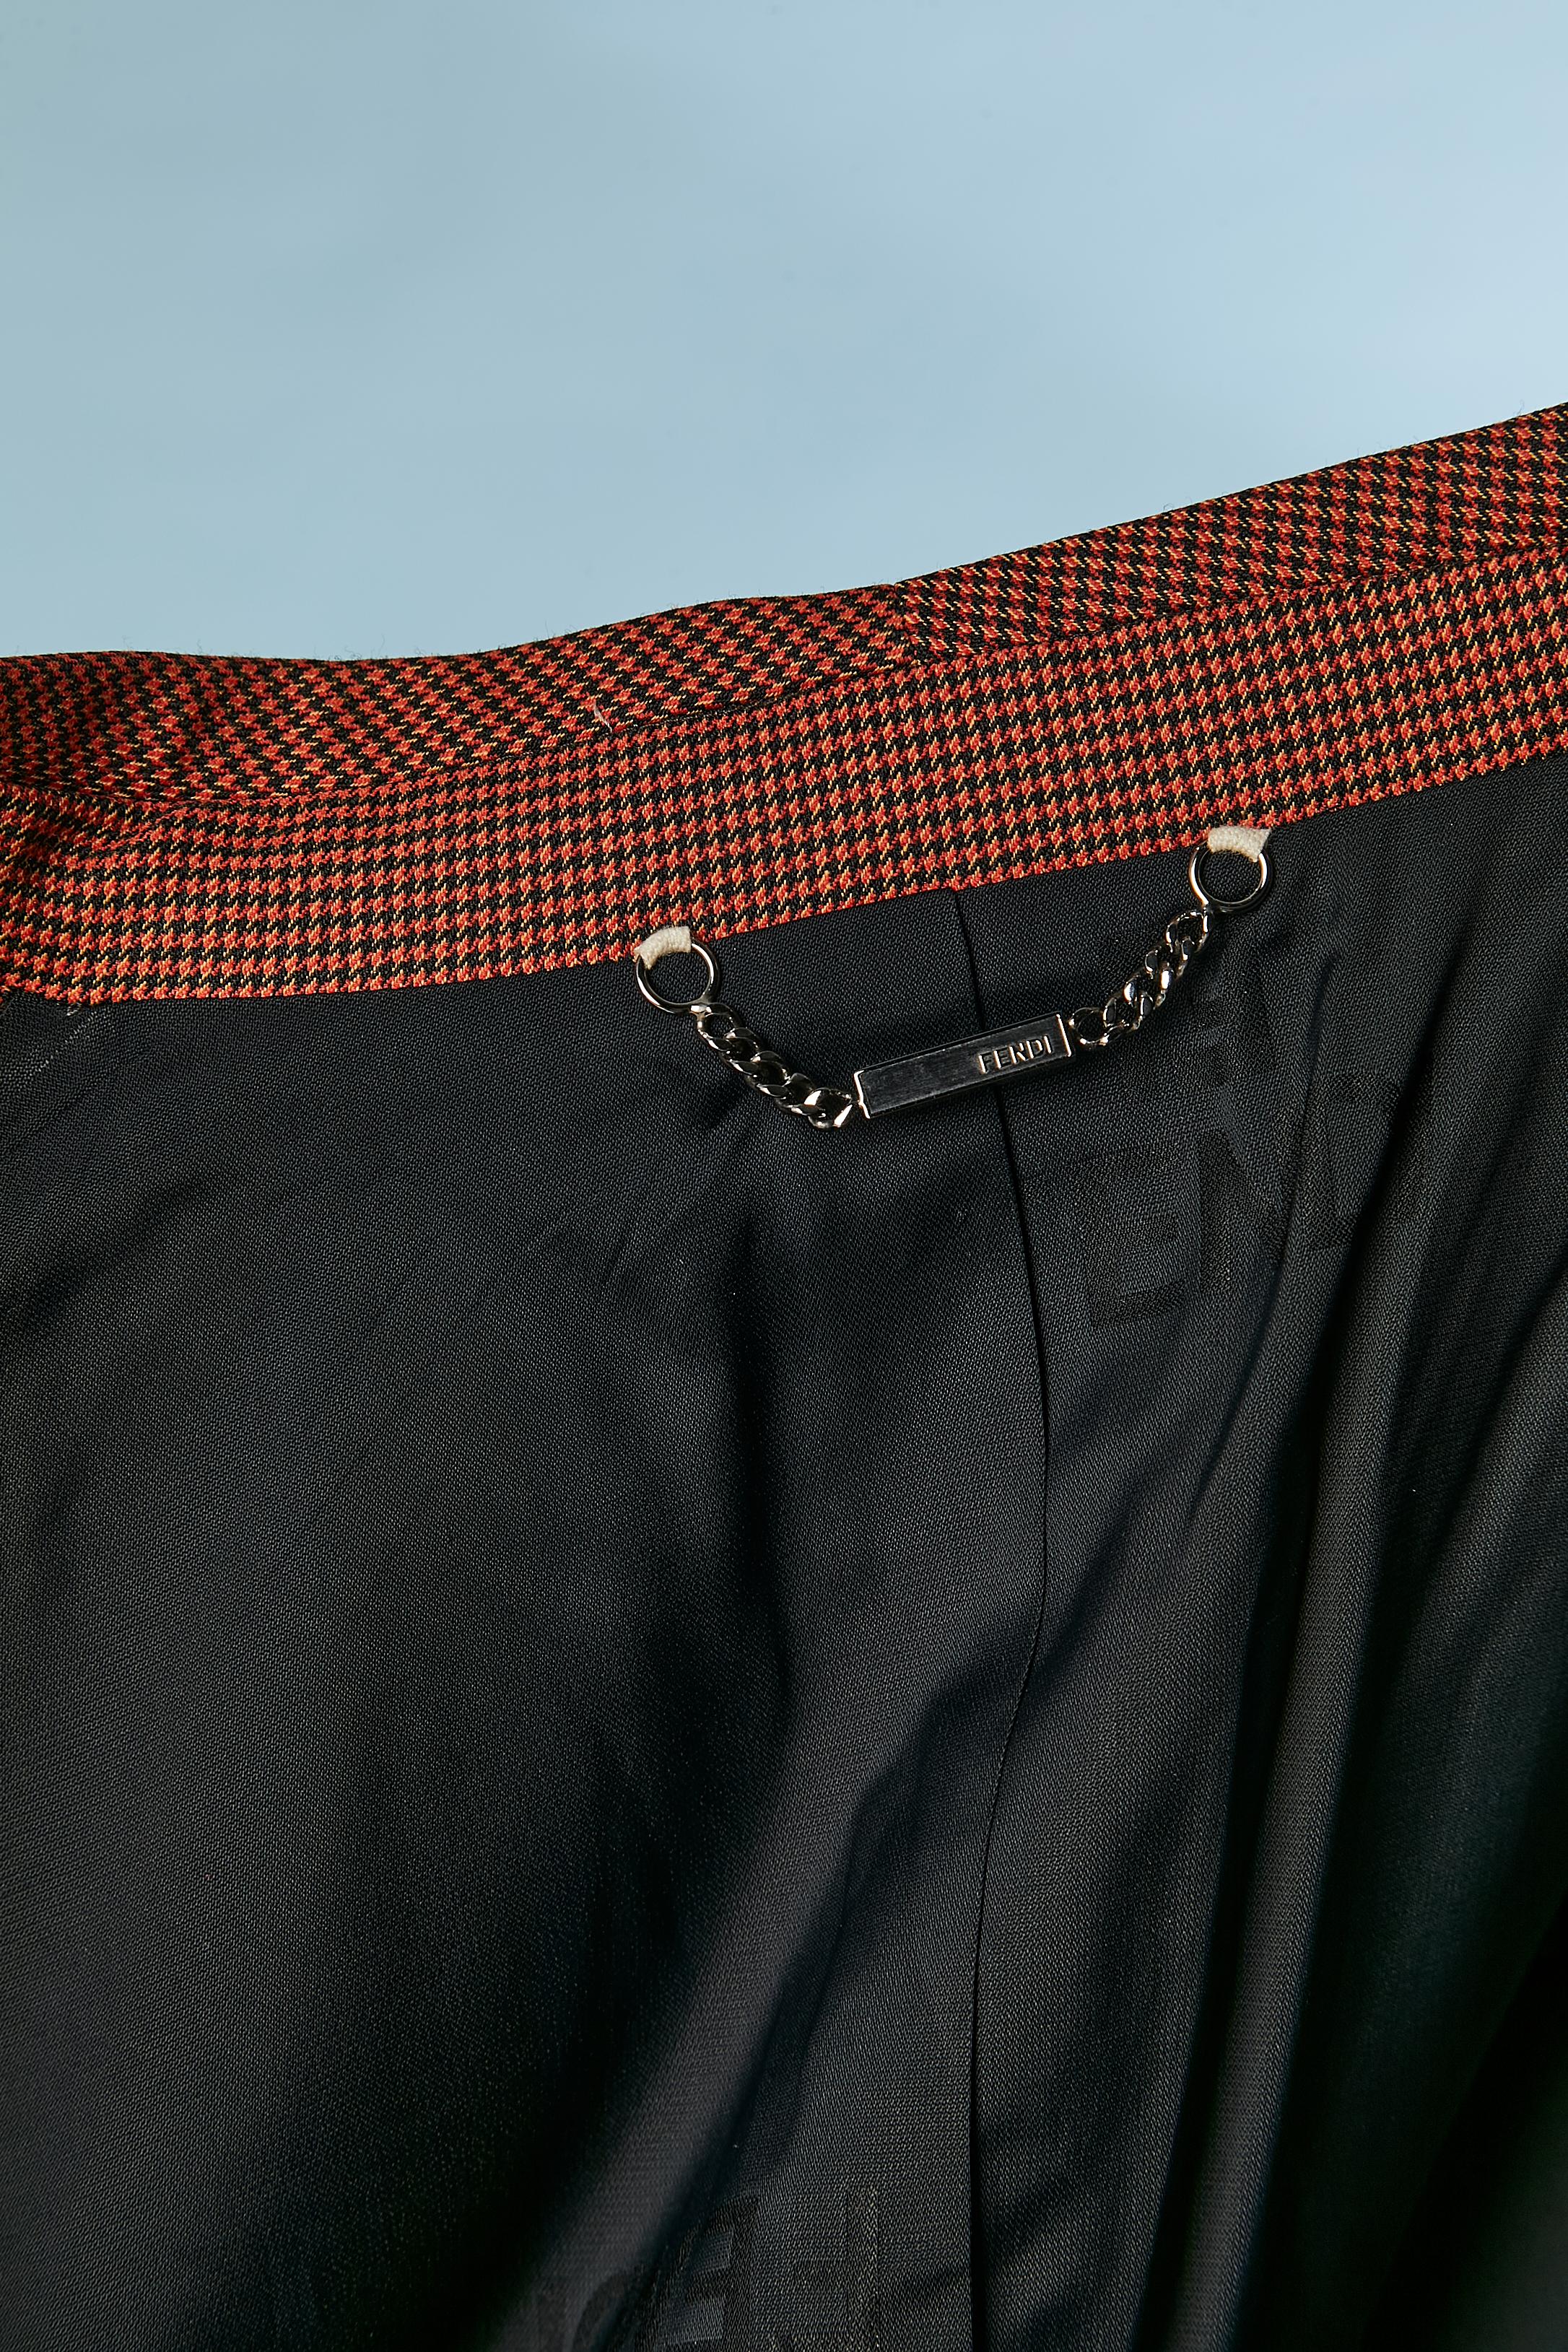 Brown and black mini Pied de poule pattern trouser-suit with fur cuffs FENDI  For Sale 7